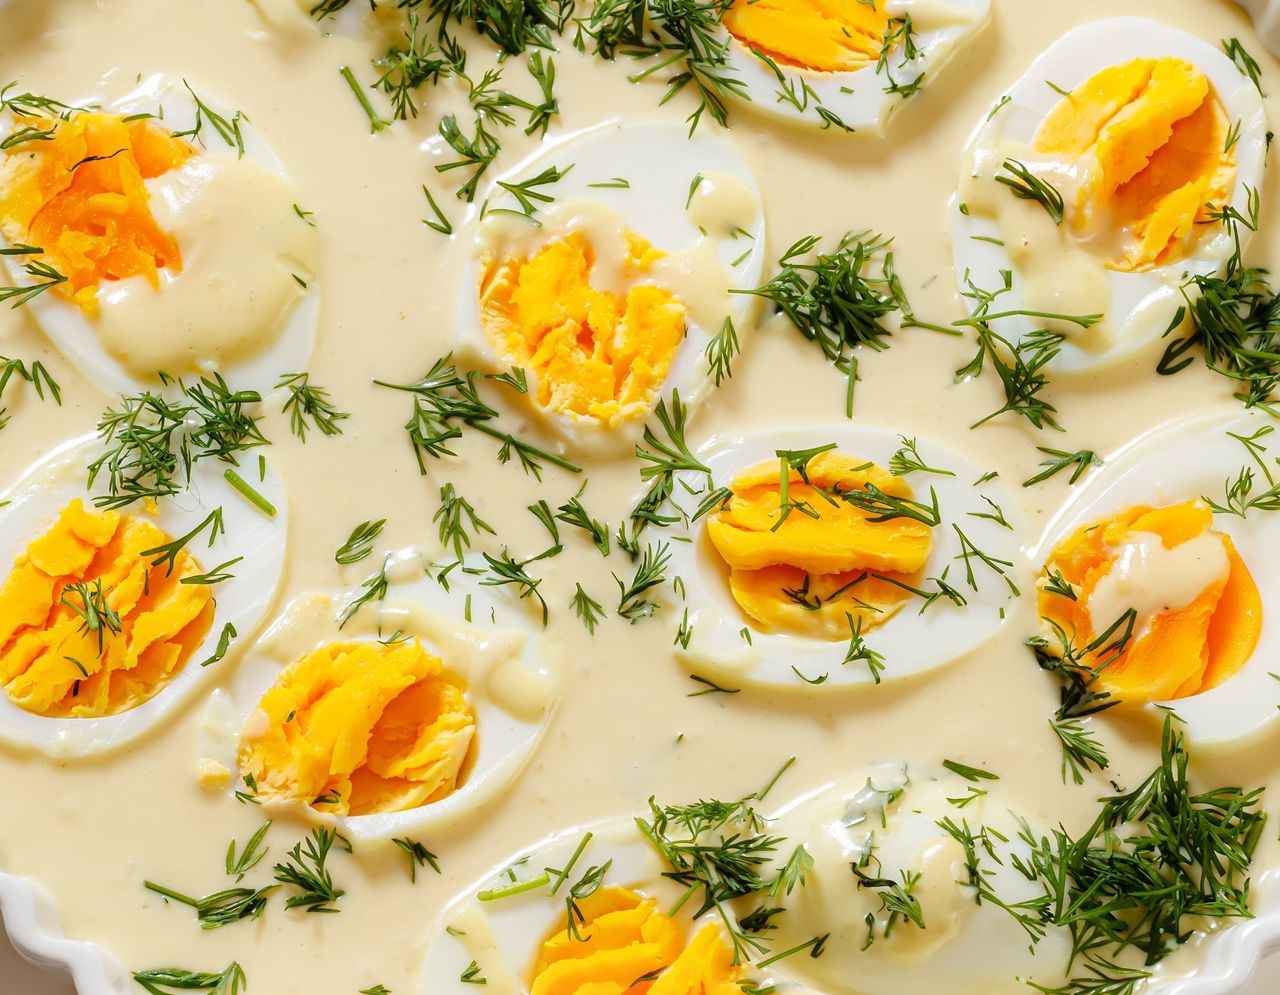 Jak przygotować jajka w sosie musztardowym?